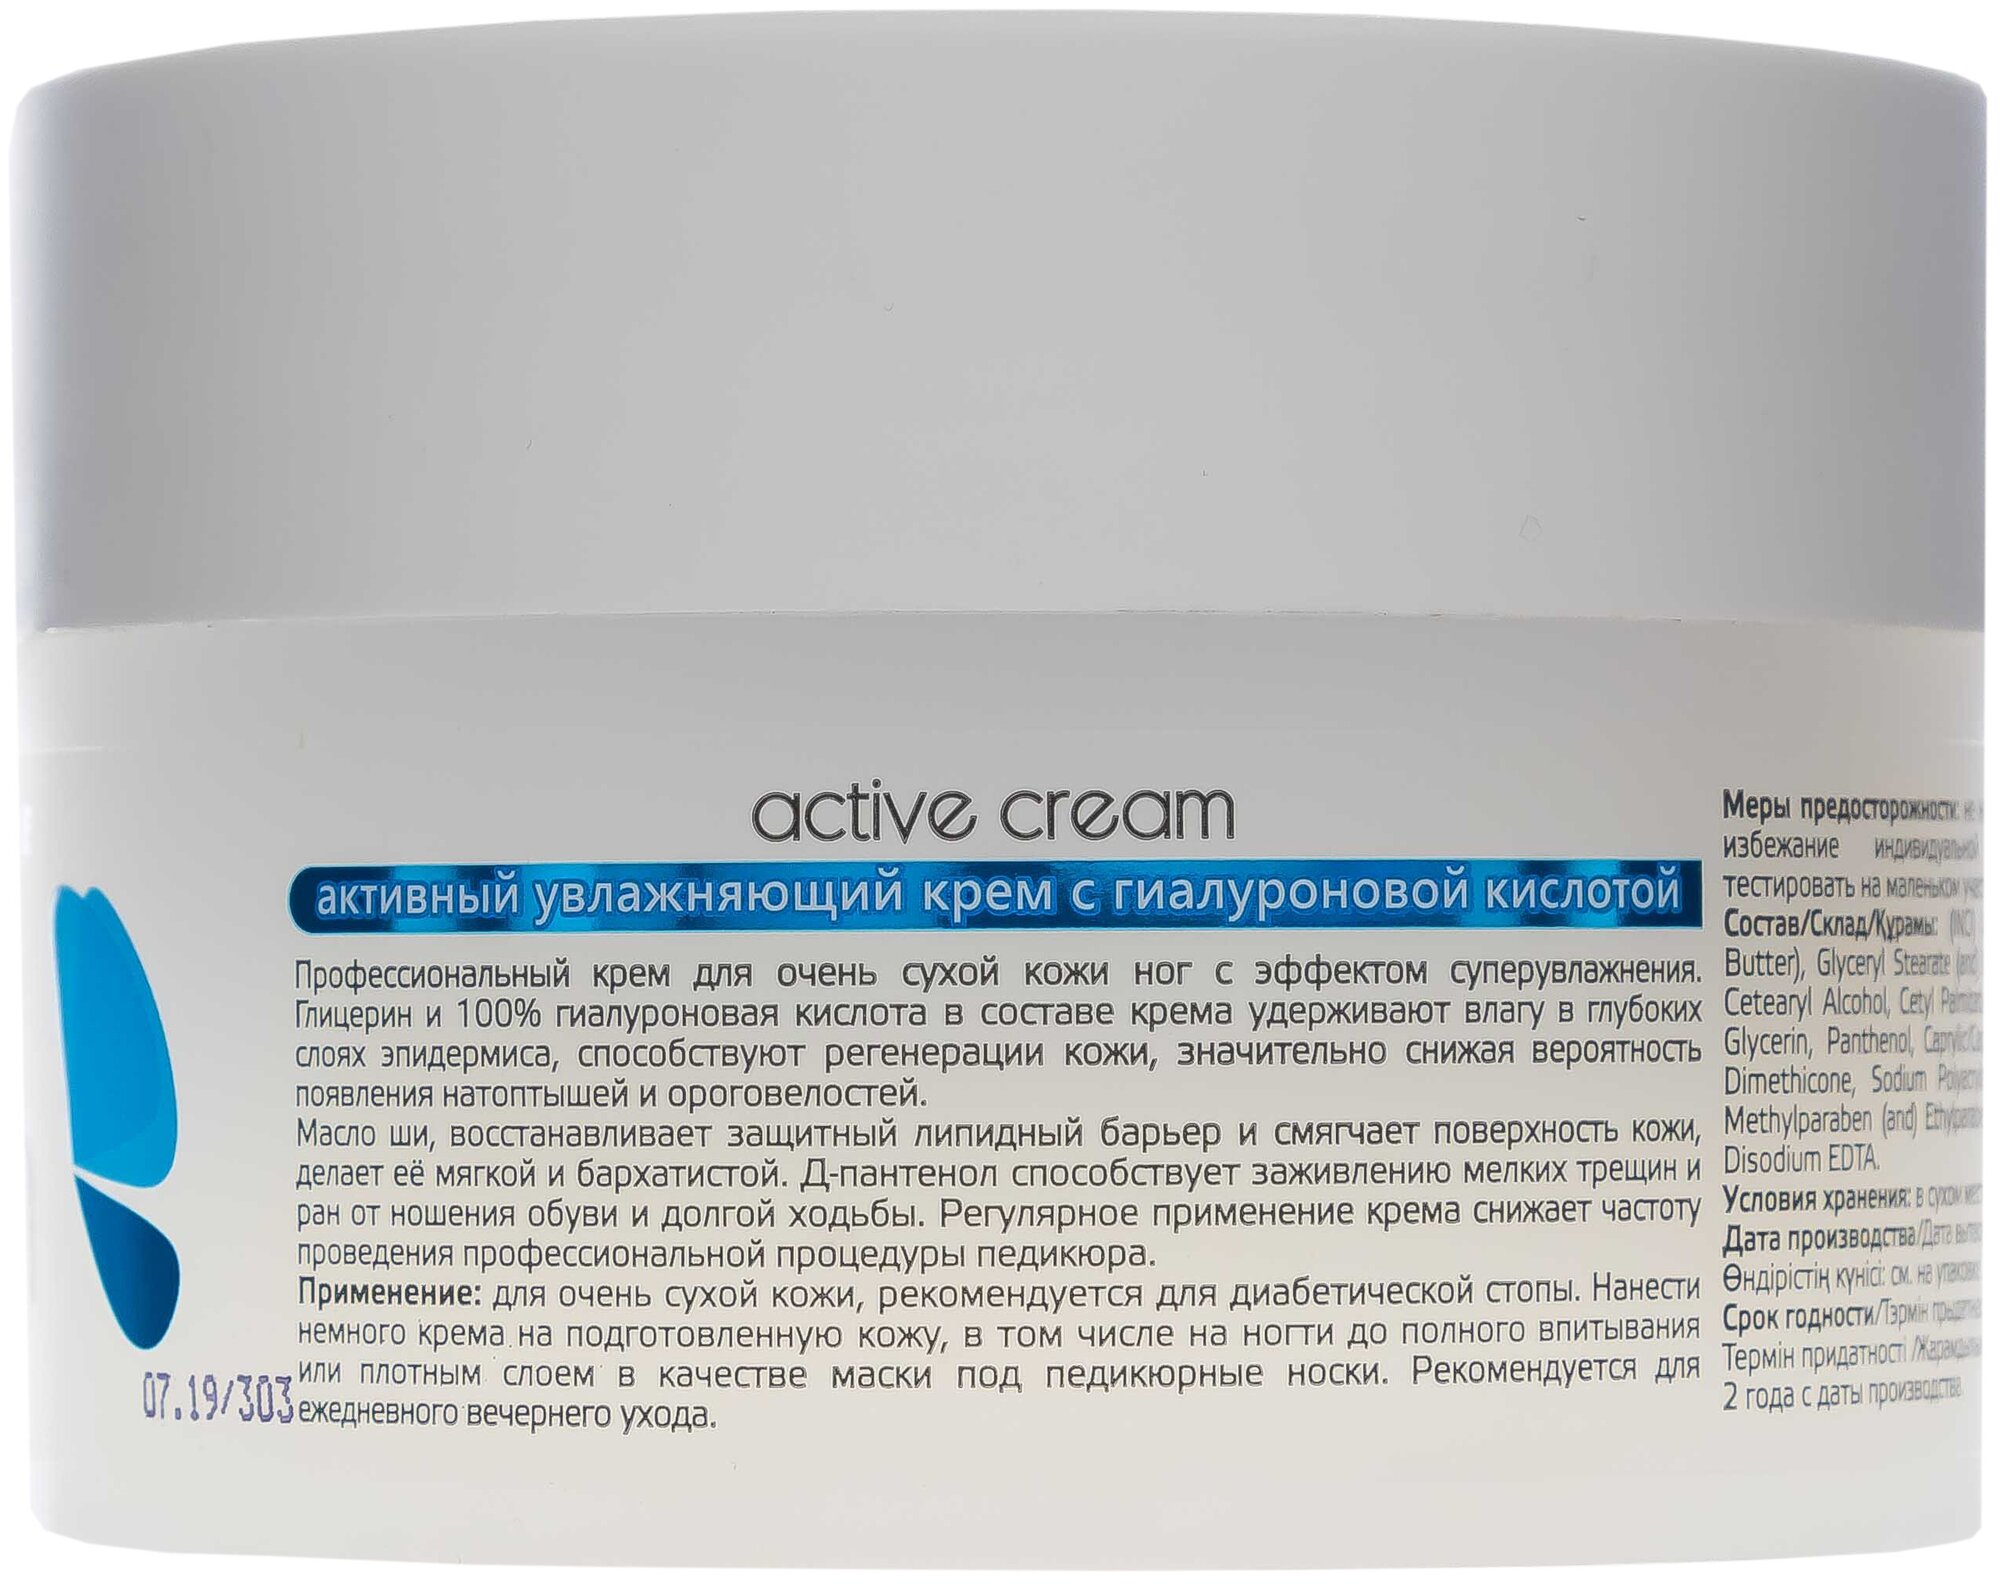 Aravia professional Активный увлажняющий крем с гиалуроновой кислотой "Active Cream" 150 мл (Aravia professional, ) - фото №13